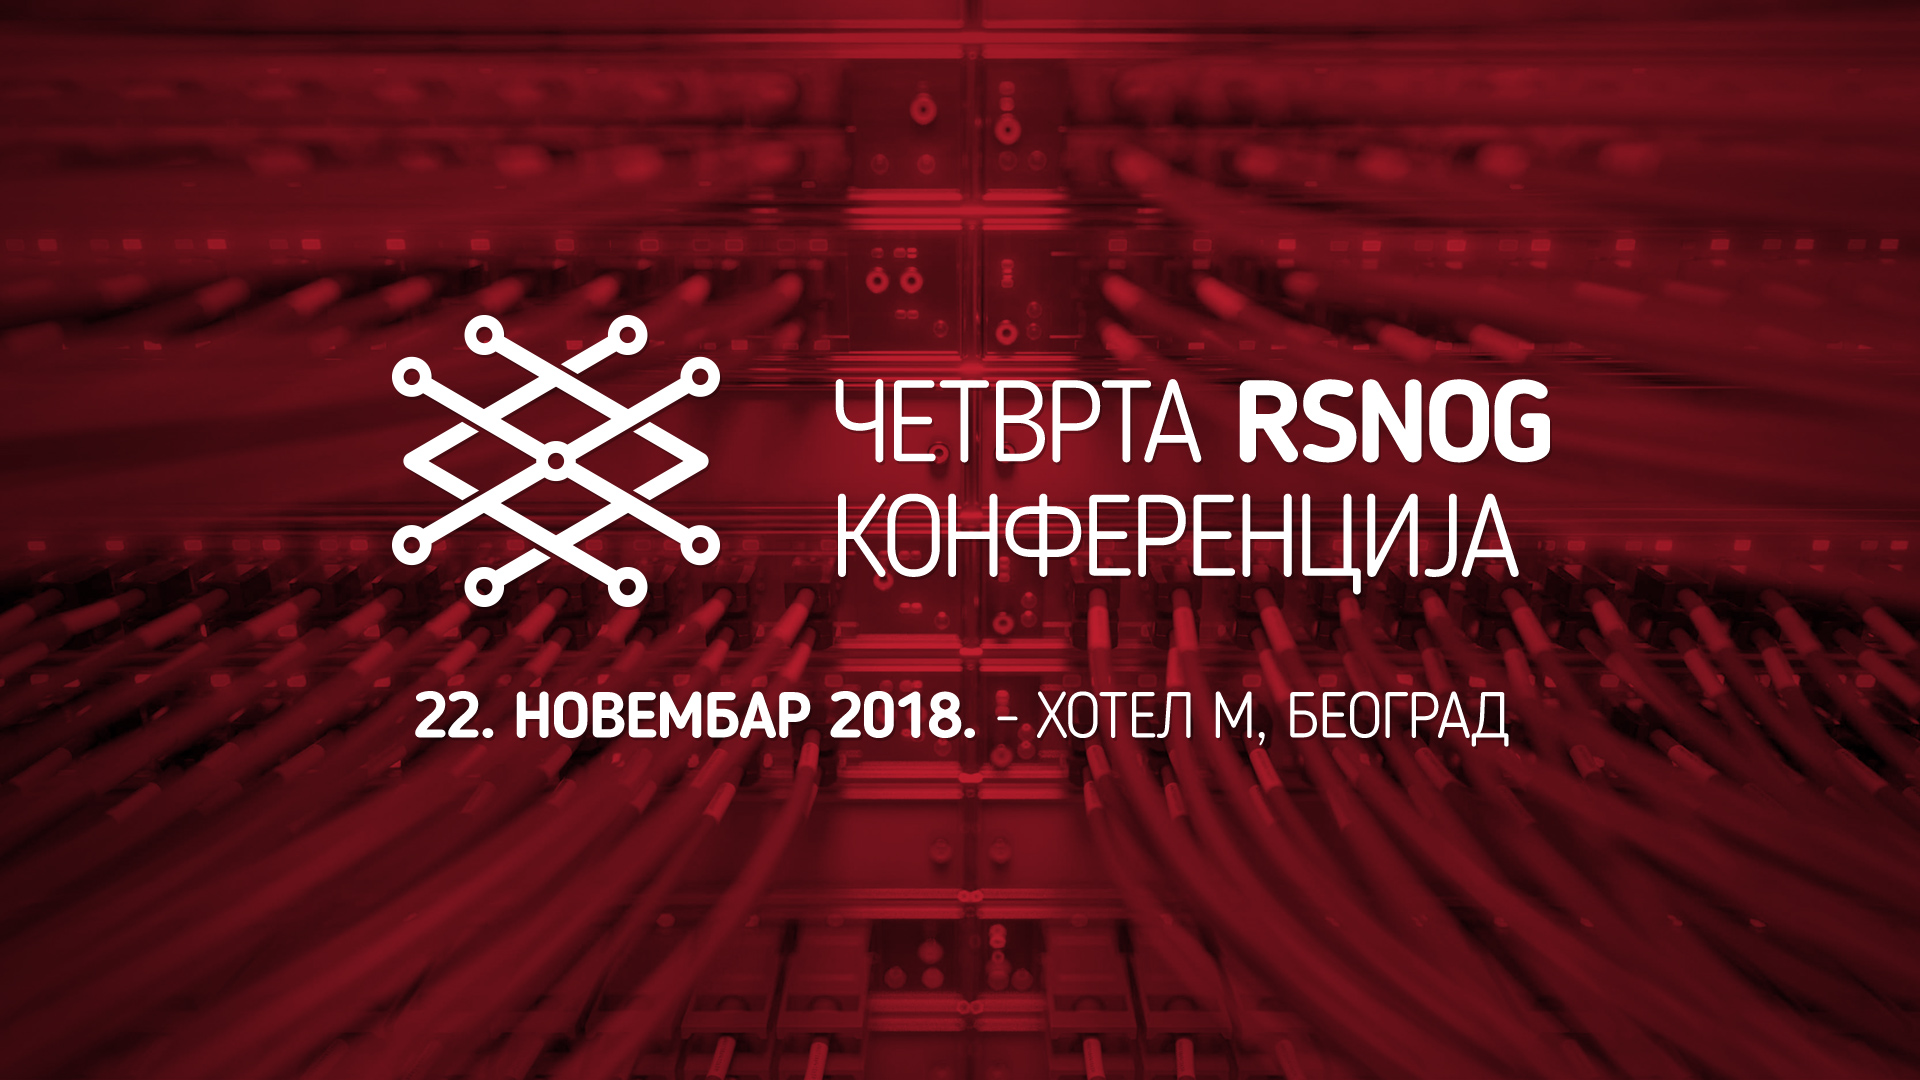 Otvorena registracija za Četvrtu RSNOG konferenciju